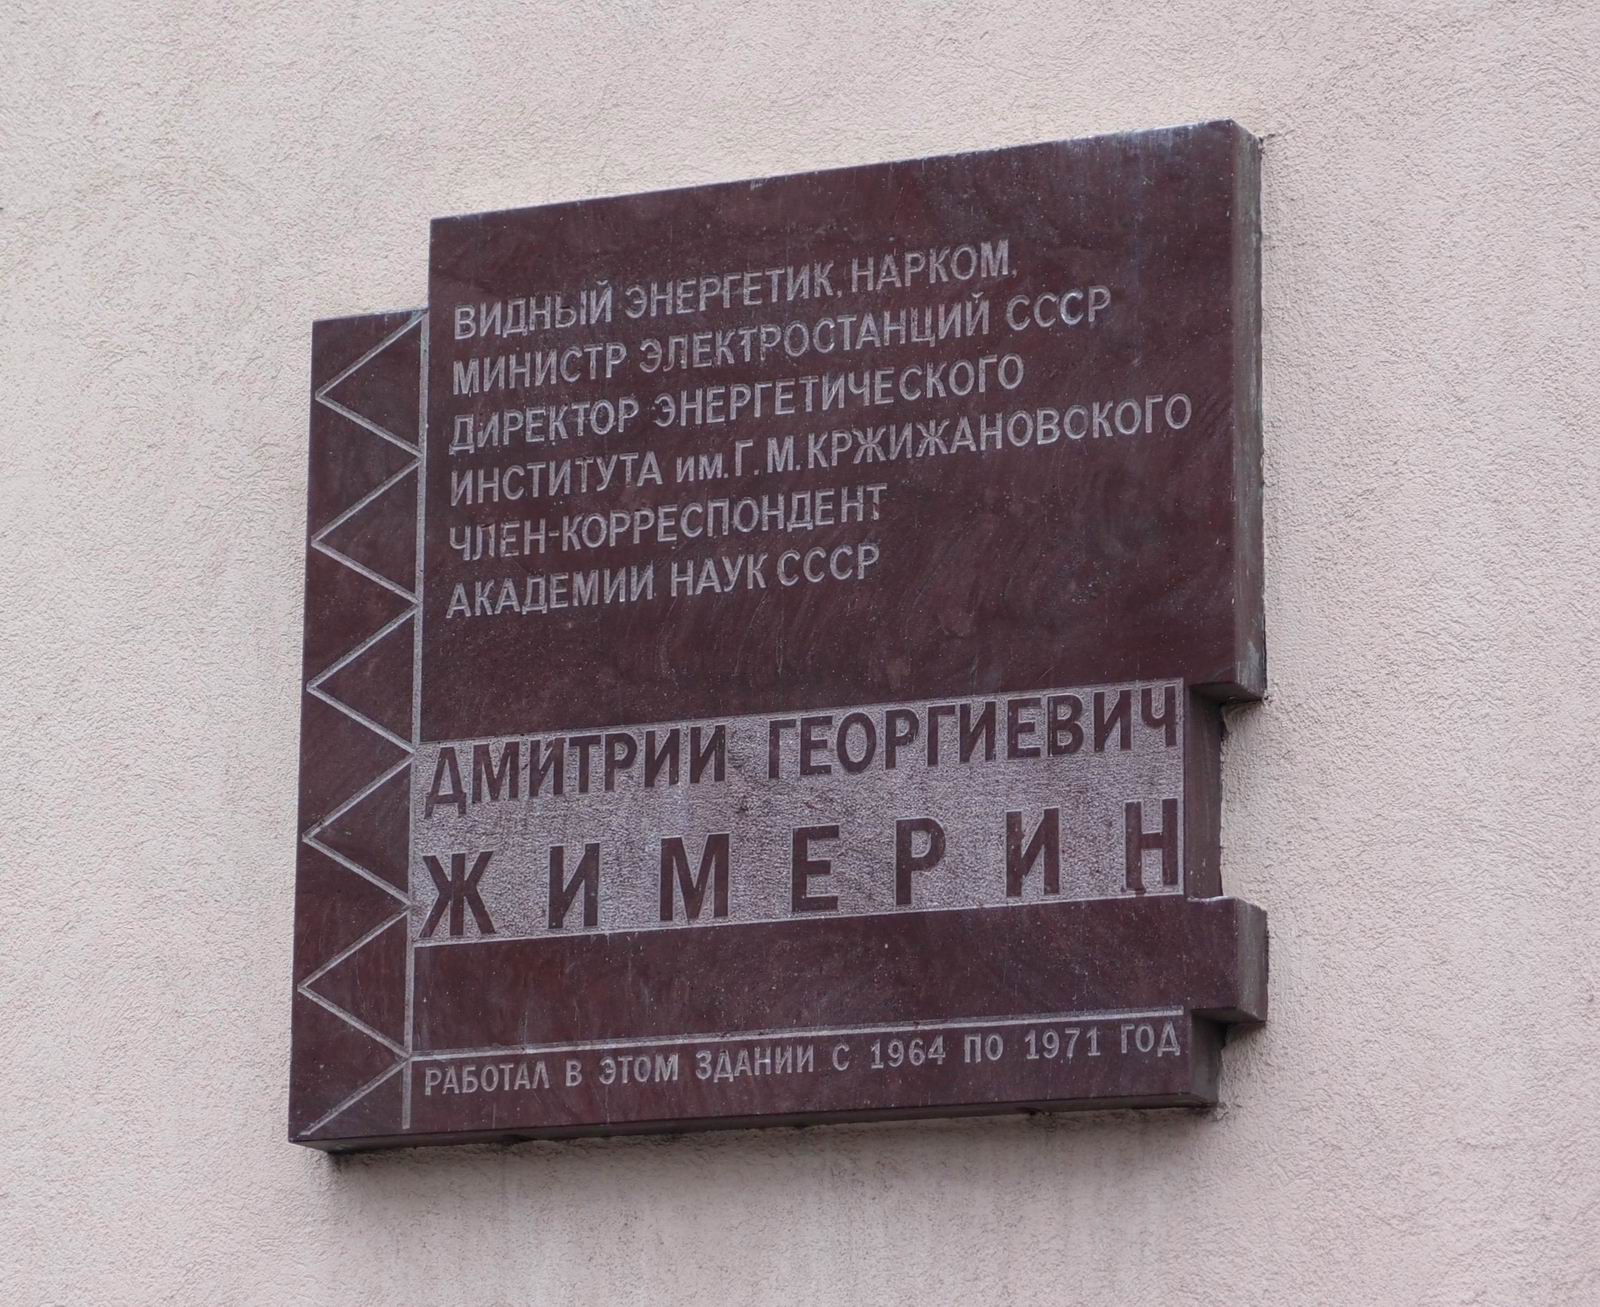 Мемориальная доска Жимерину Д.Г. (1906–1995), арх. Г.Ишкильдина, на Ленинском проспекте, дом 19, открыта в феврале 2007.